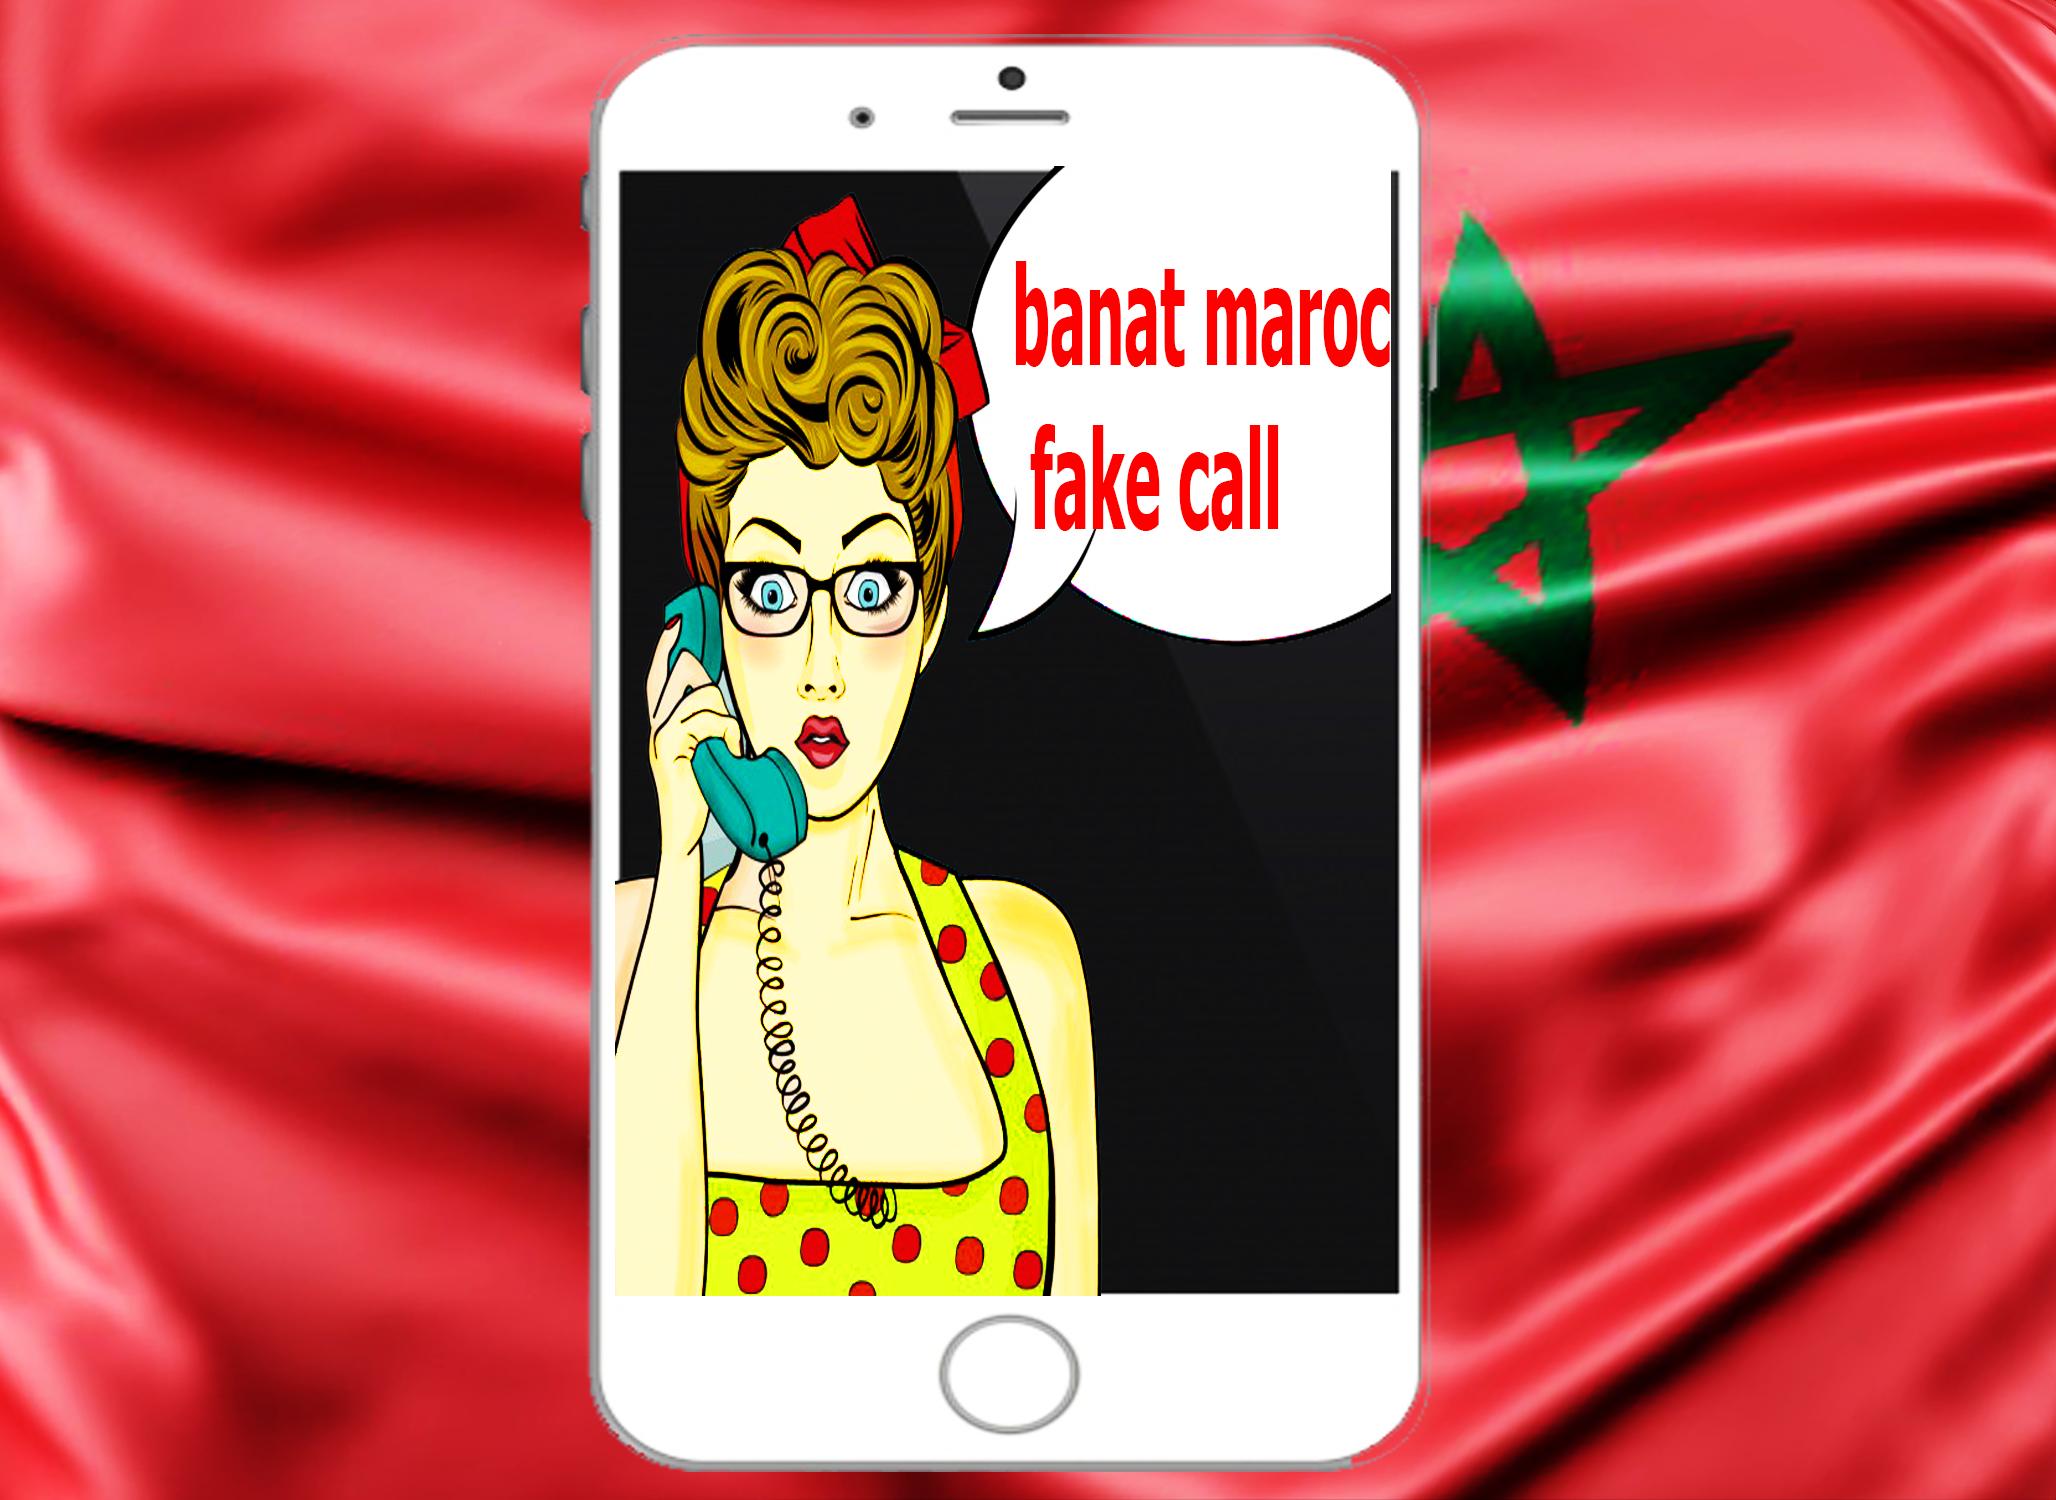 Zawaj maroc fatayat chat Maroc